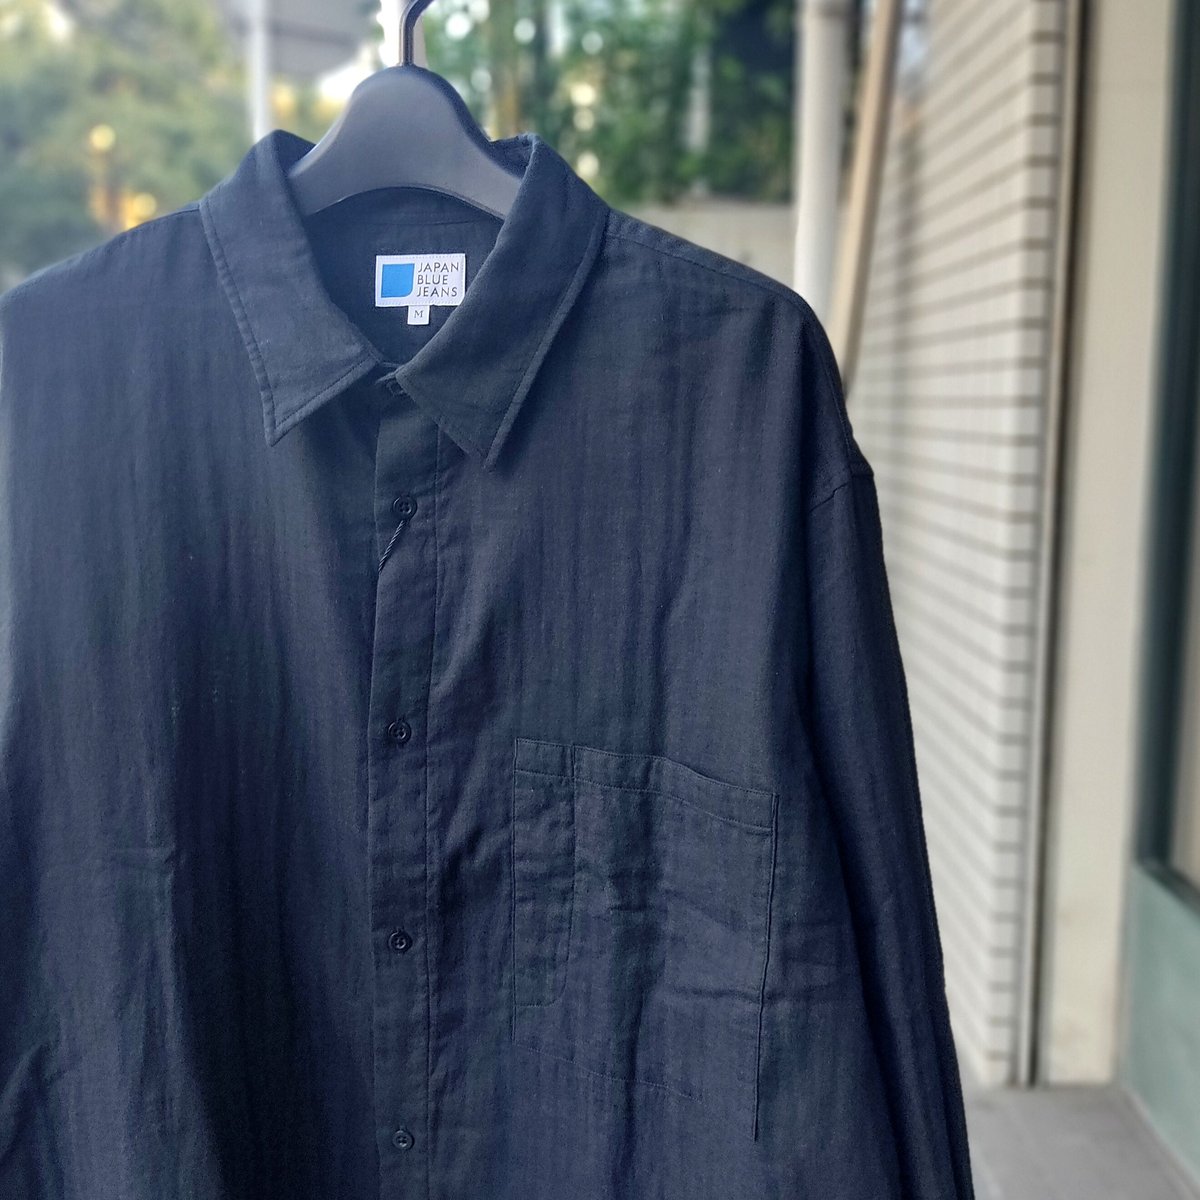 【JAPAN BLUE JEANS】ダブルガーゼロングスリーブシャツ/ブラック